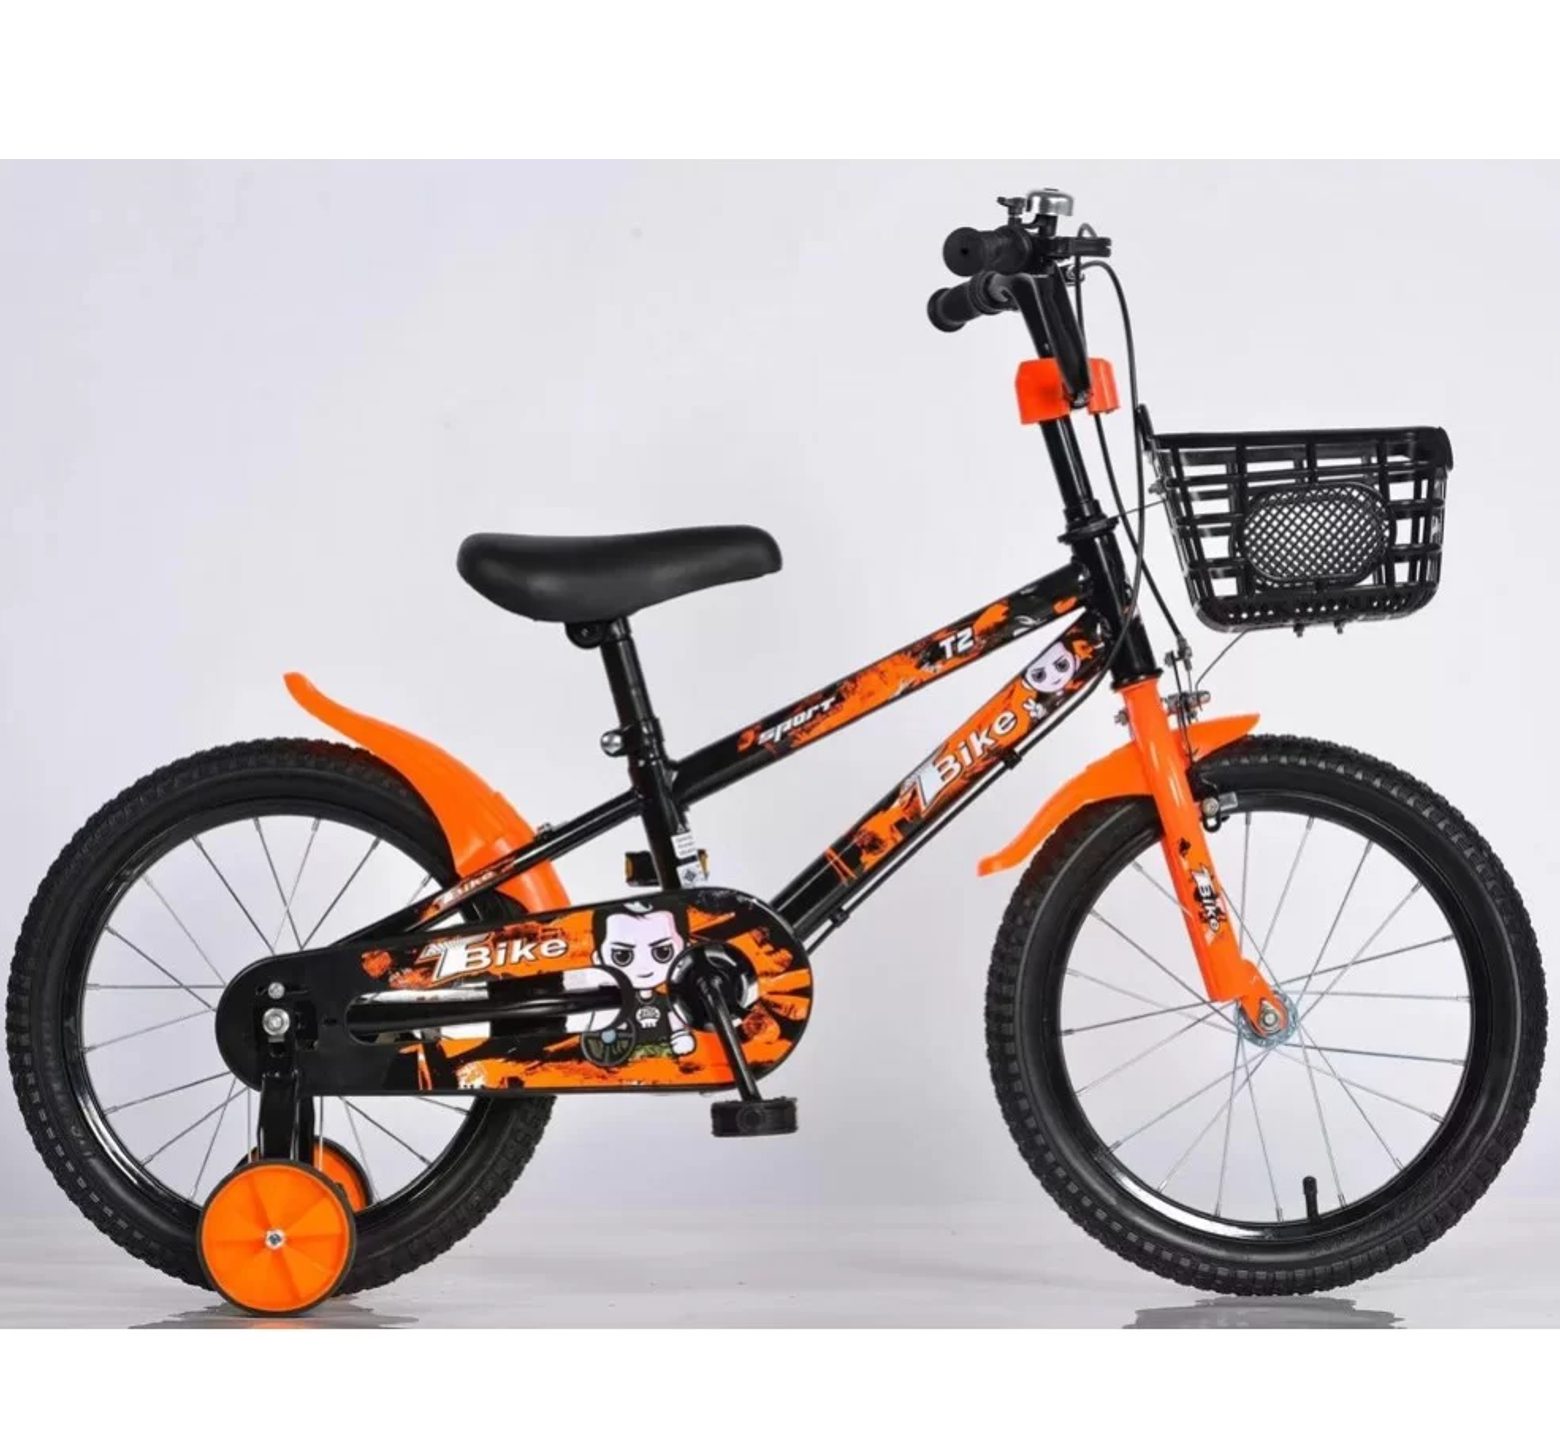 Ποδήλατο bmx T2 12 - 16 ιντσών με καλάθι σε μαύρο πορτοκαλί χρώμα